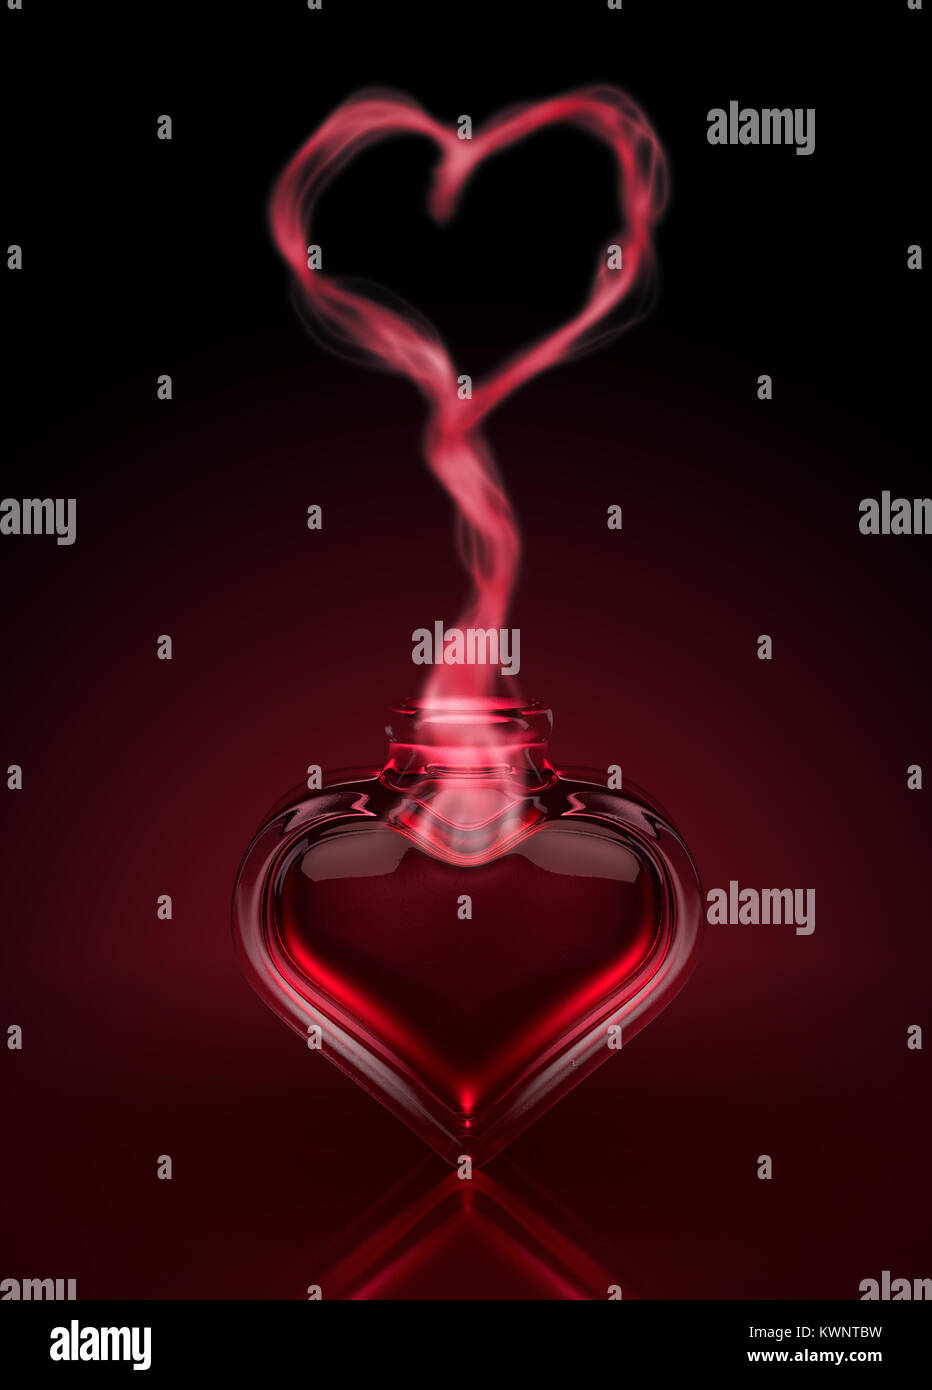 Eine liebe Konzept einen roten Trank in ein offenes Herz geformten Flasche und Dampf steigt ein Herz darüber zu bilden - 3D-Rendering Stockfoto